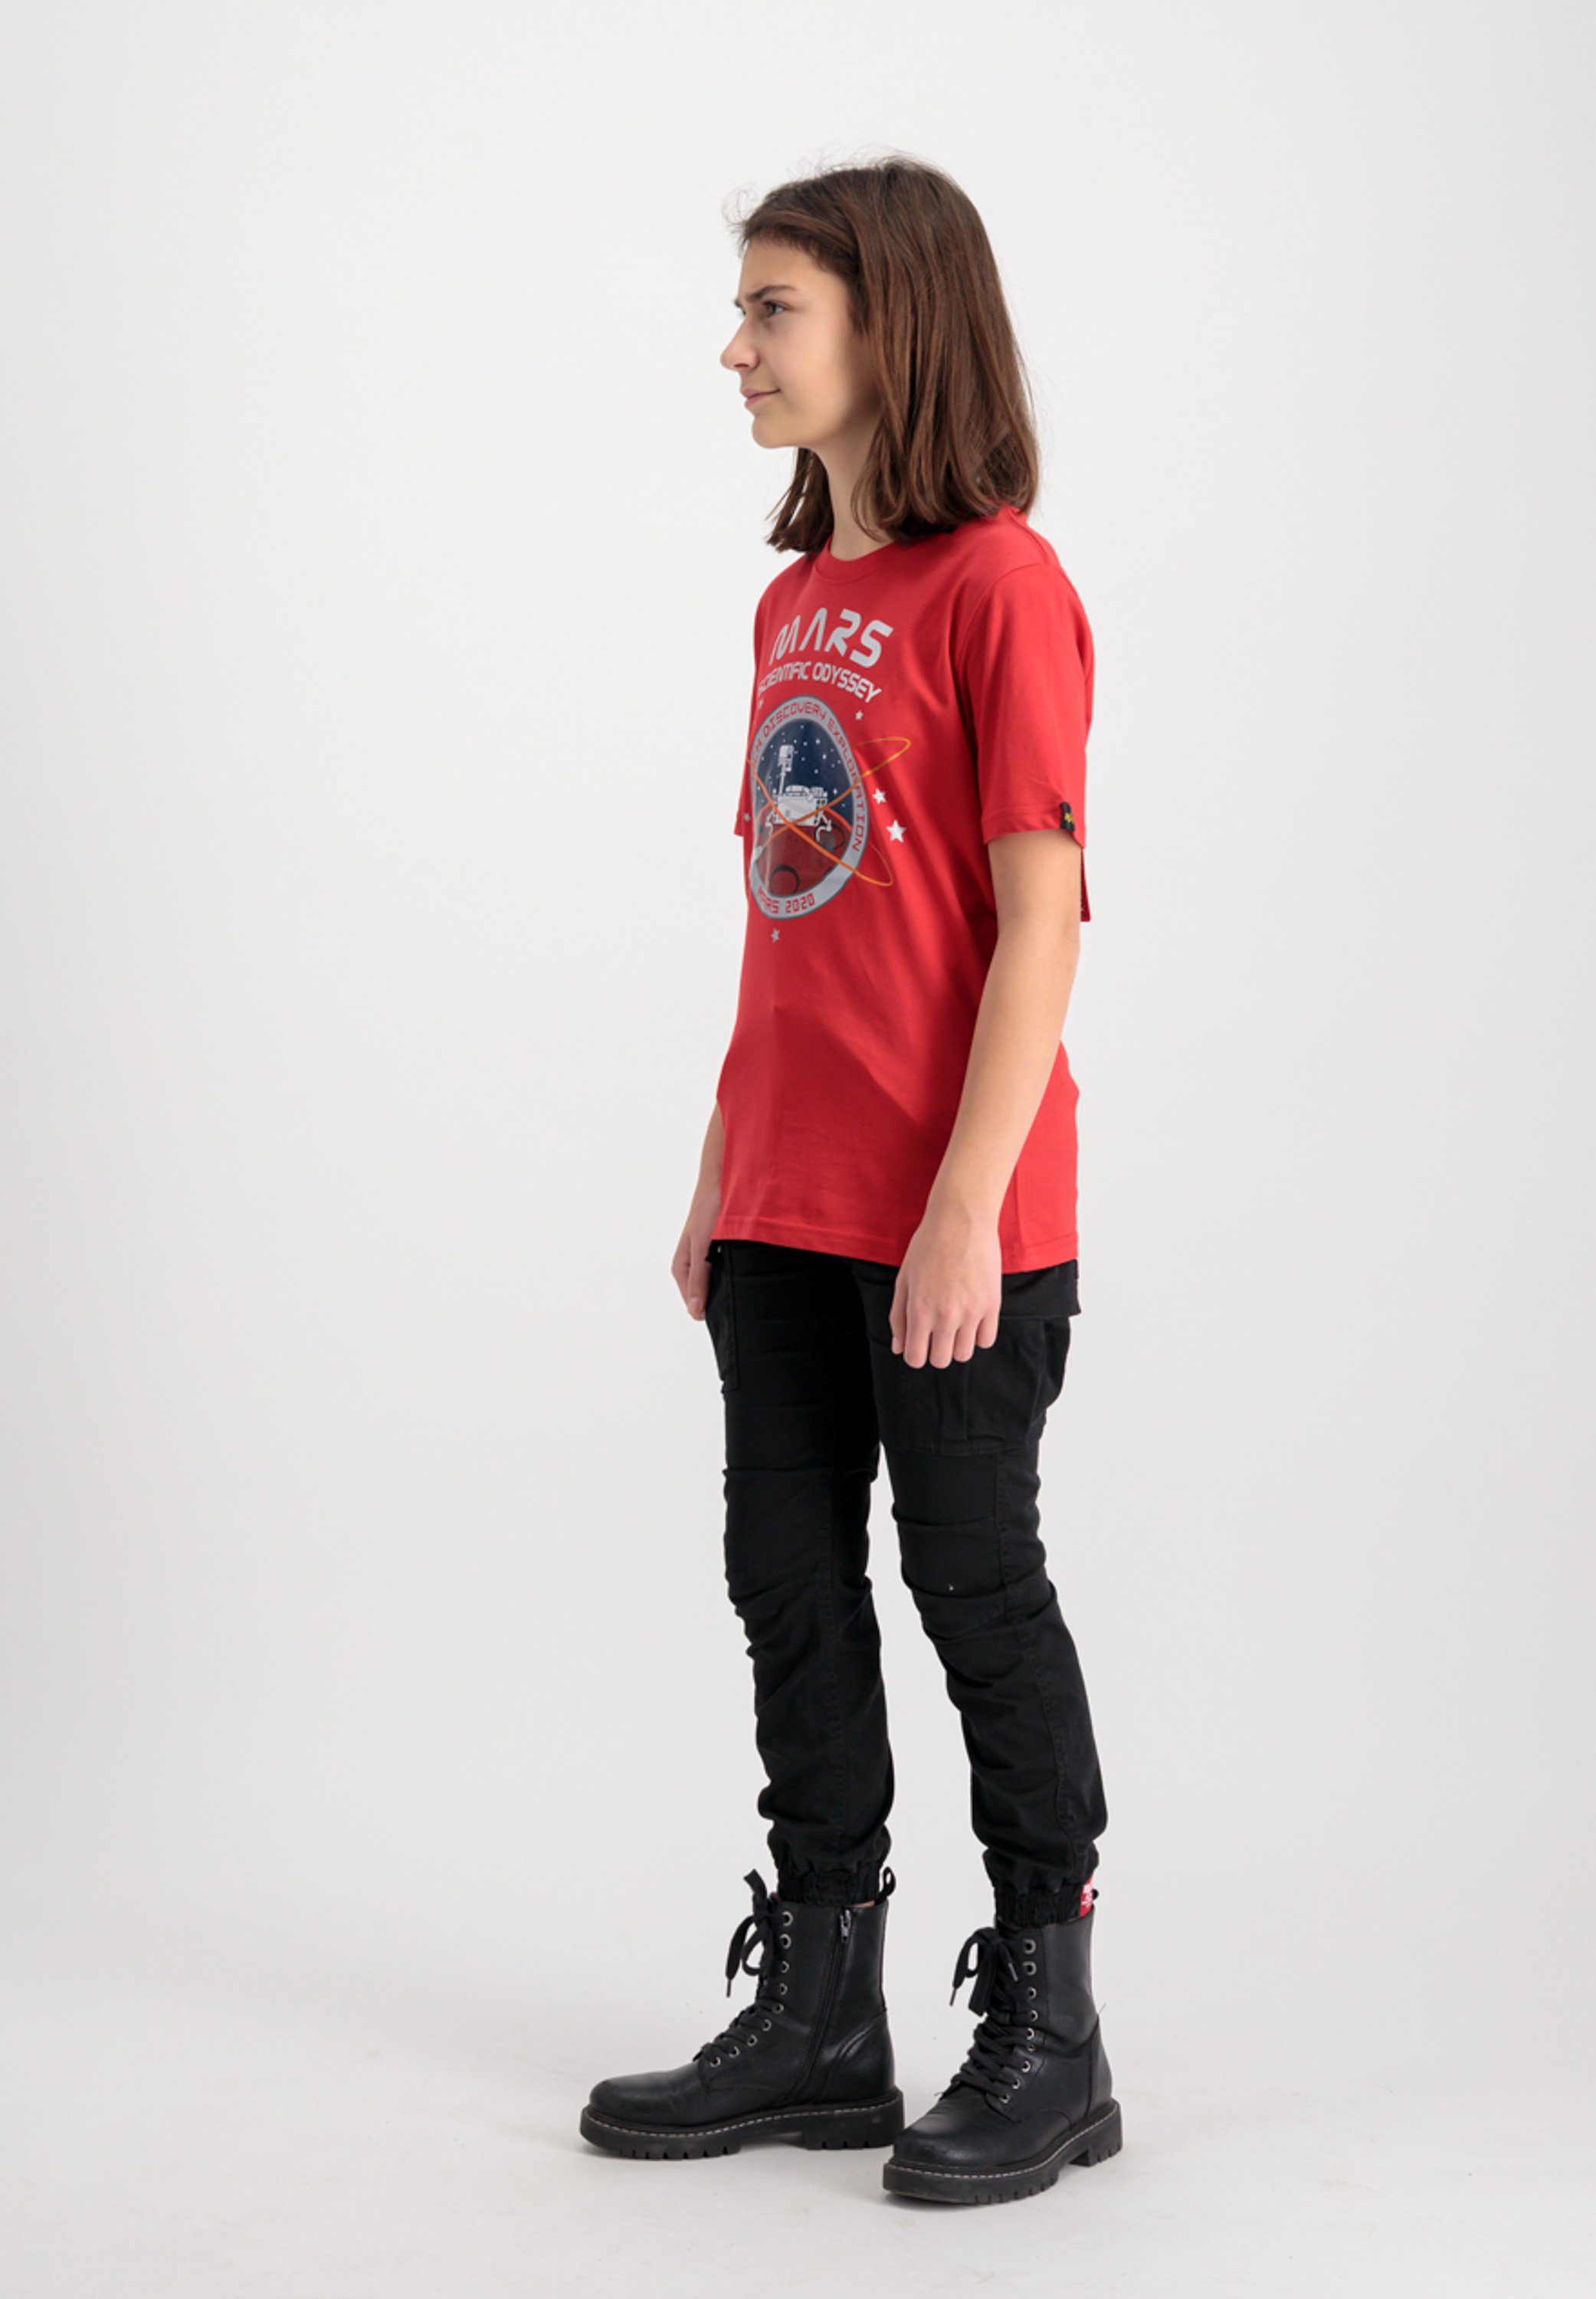 Alpha Industries T-shirt Kids T-Shirts Mission To Mars T Kids-Teens